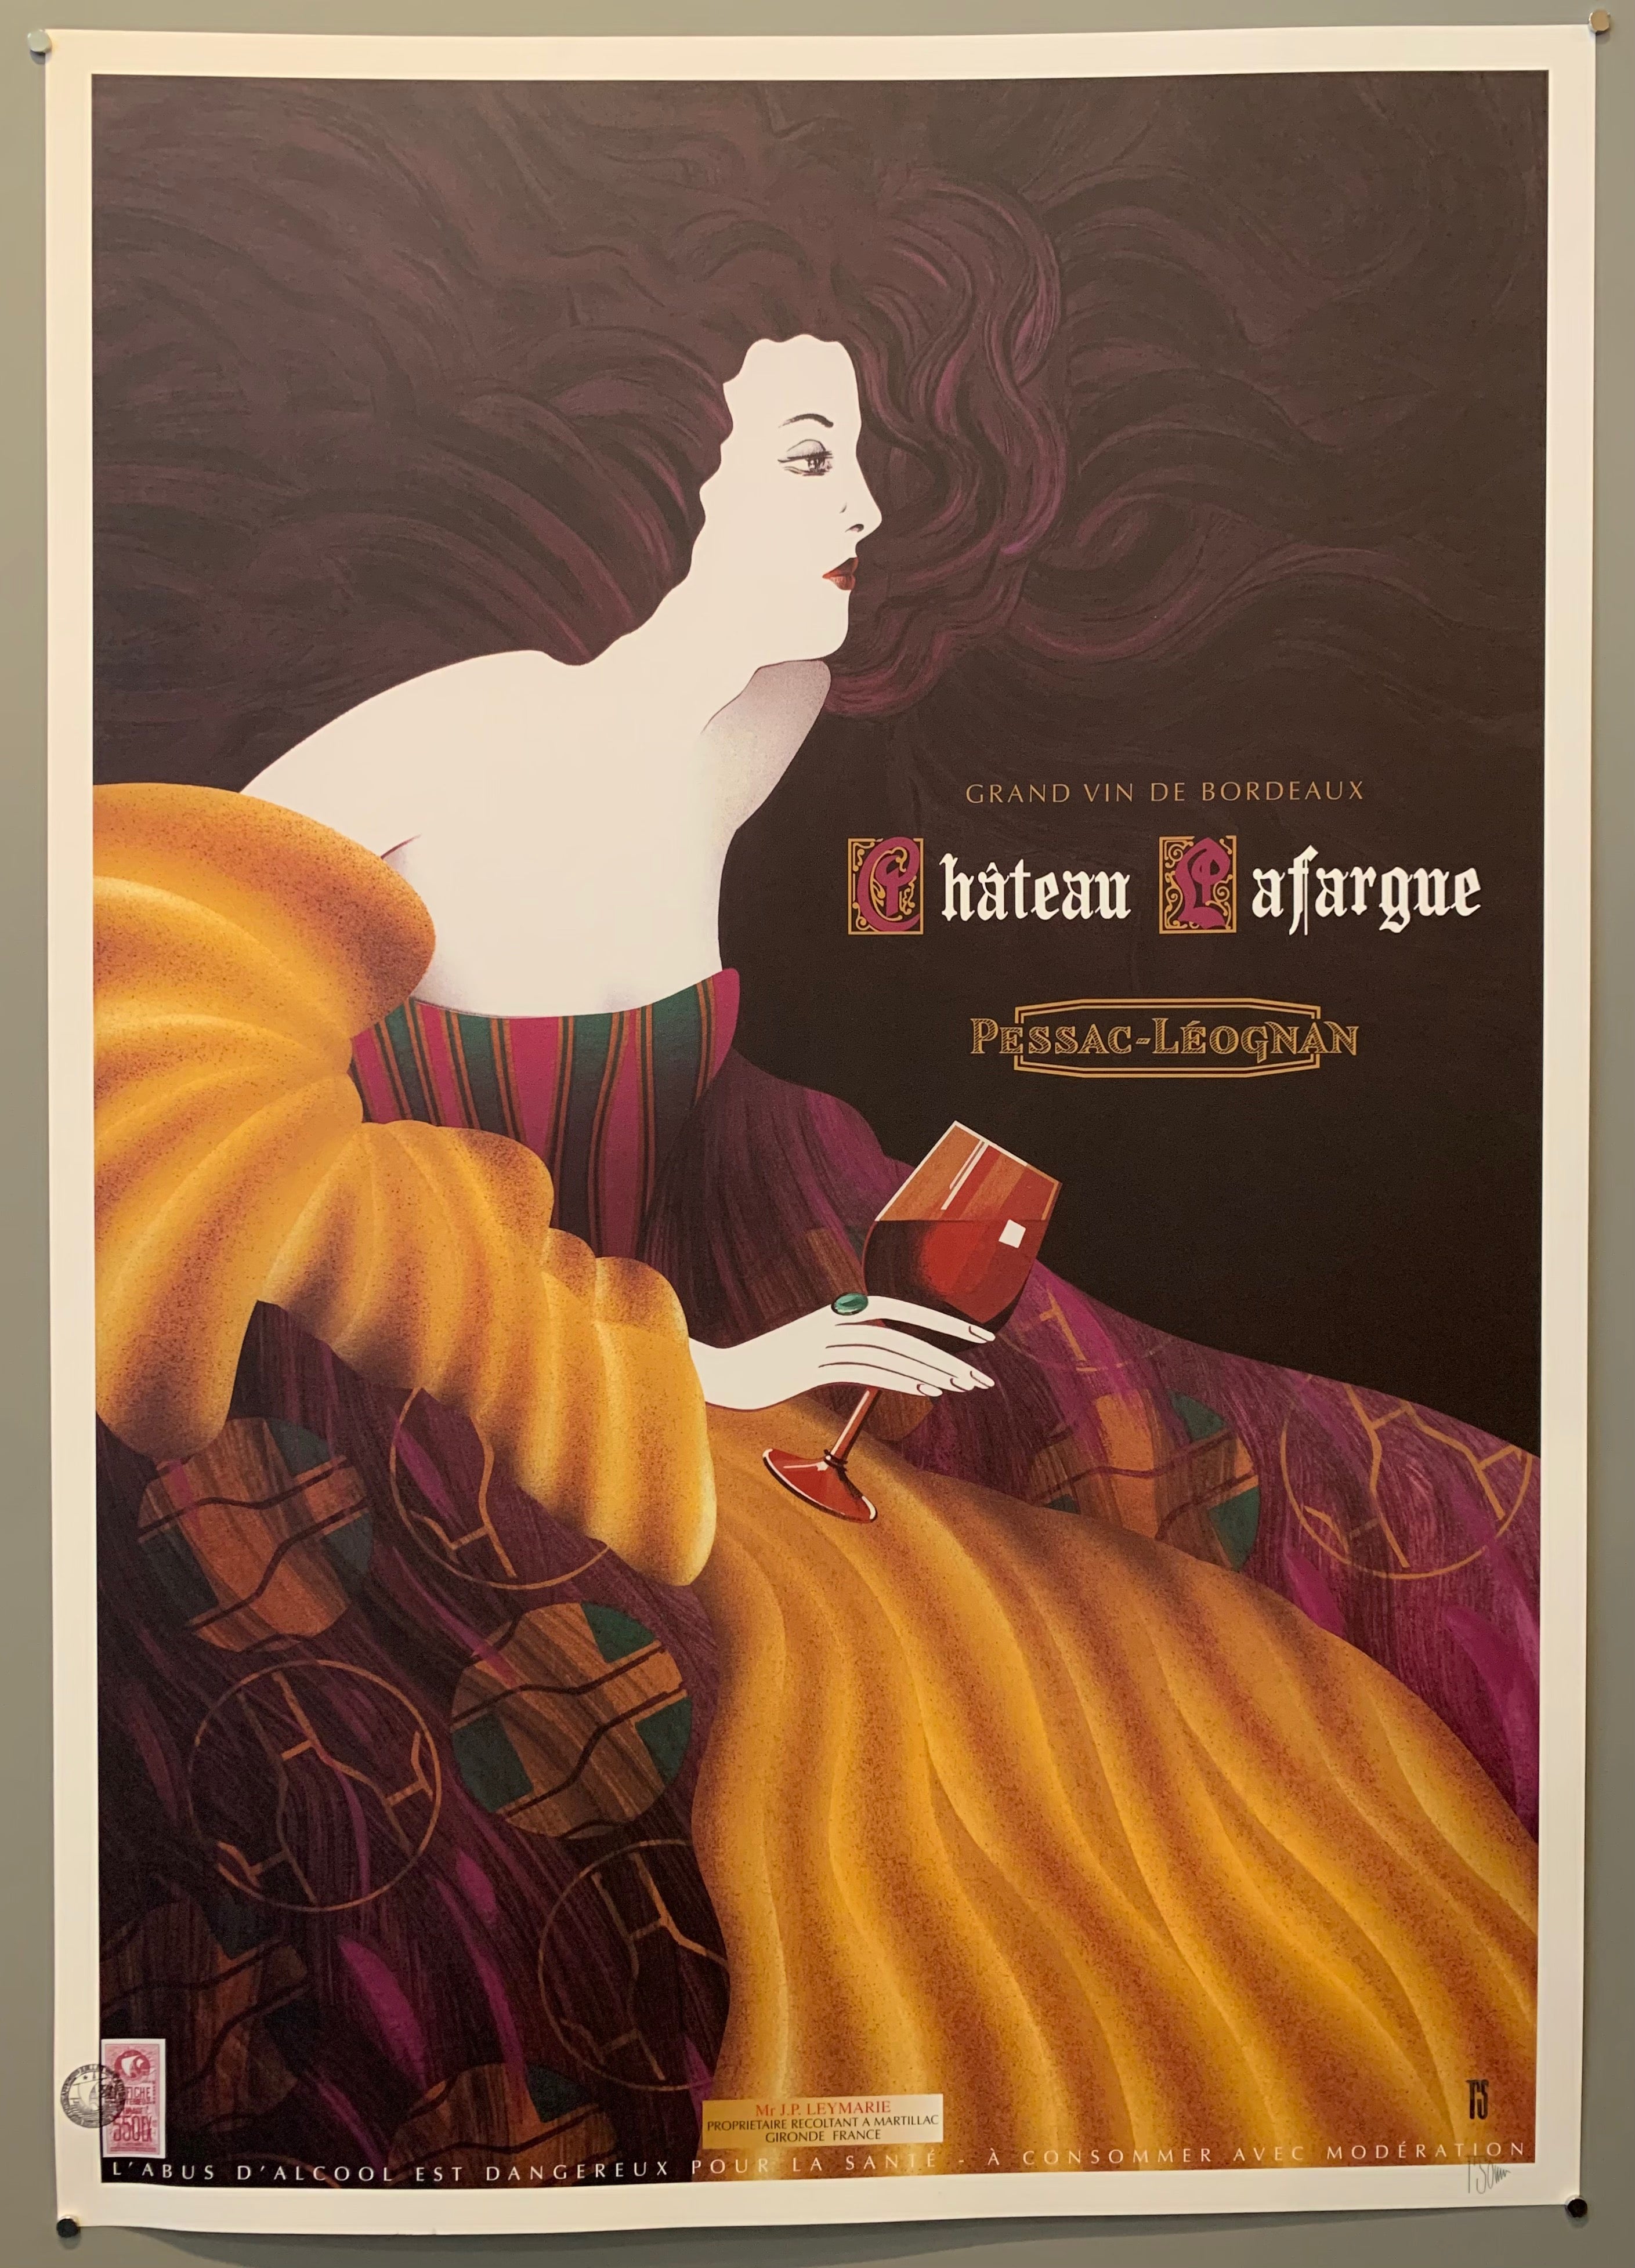 Château Lafargue Signed Poster